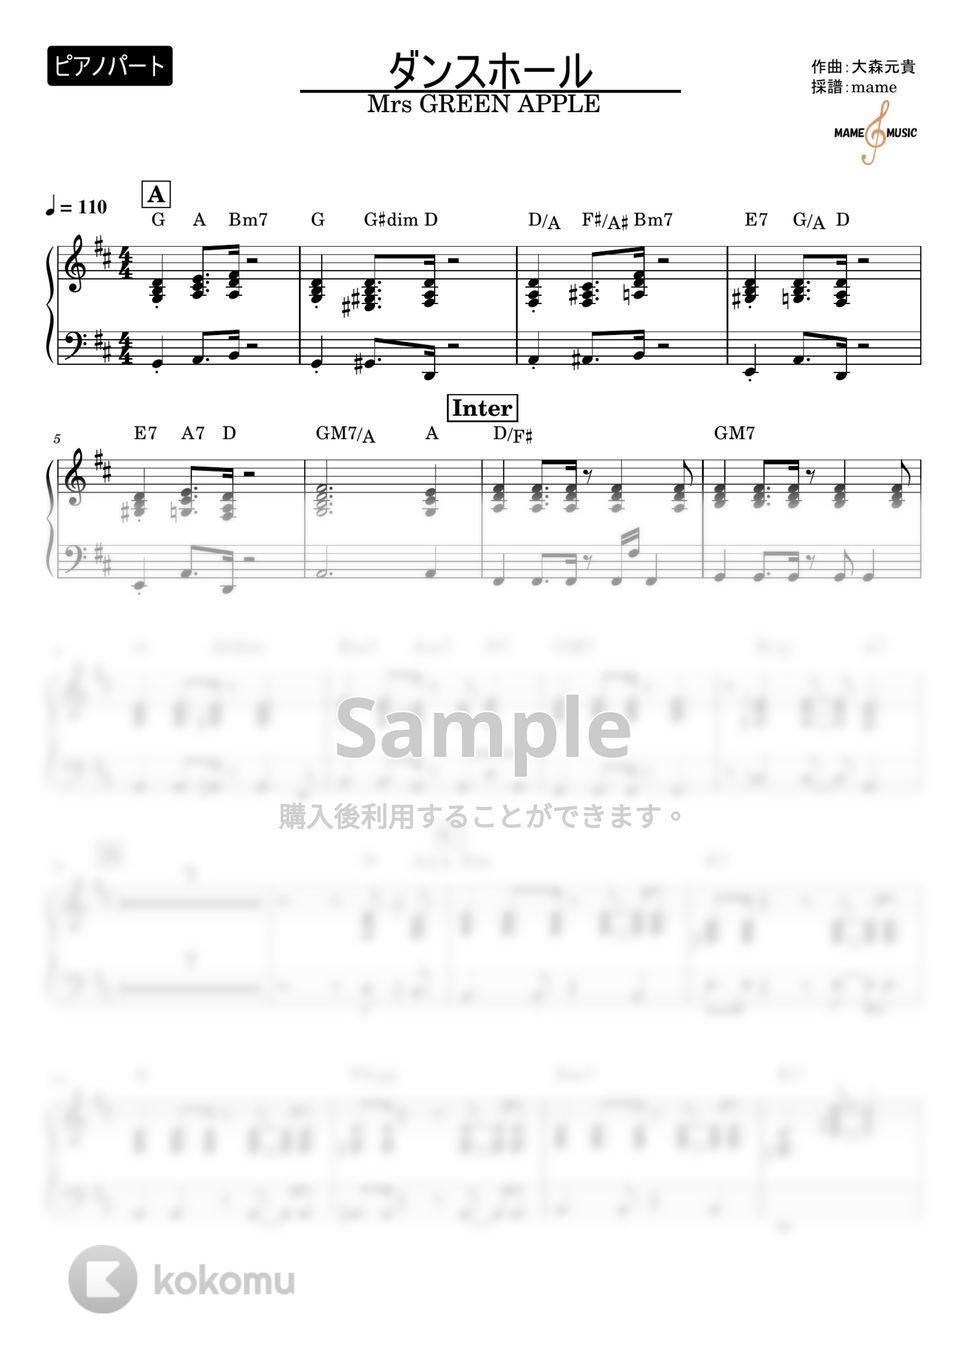 Mrs. GREEN APPLE - ダンスホール (ピアノパート) by mame